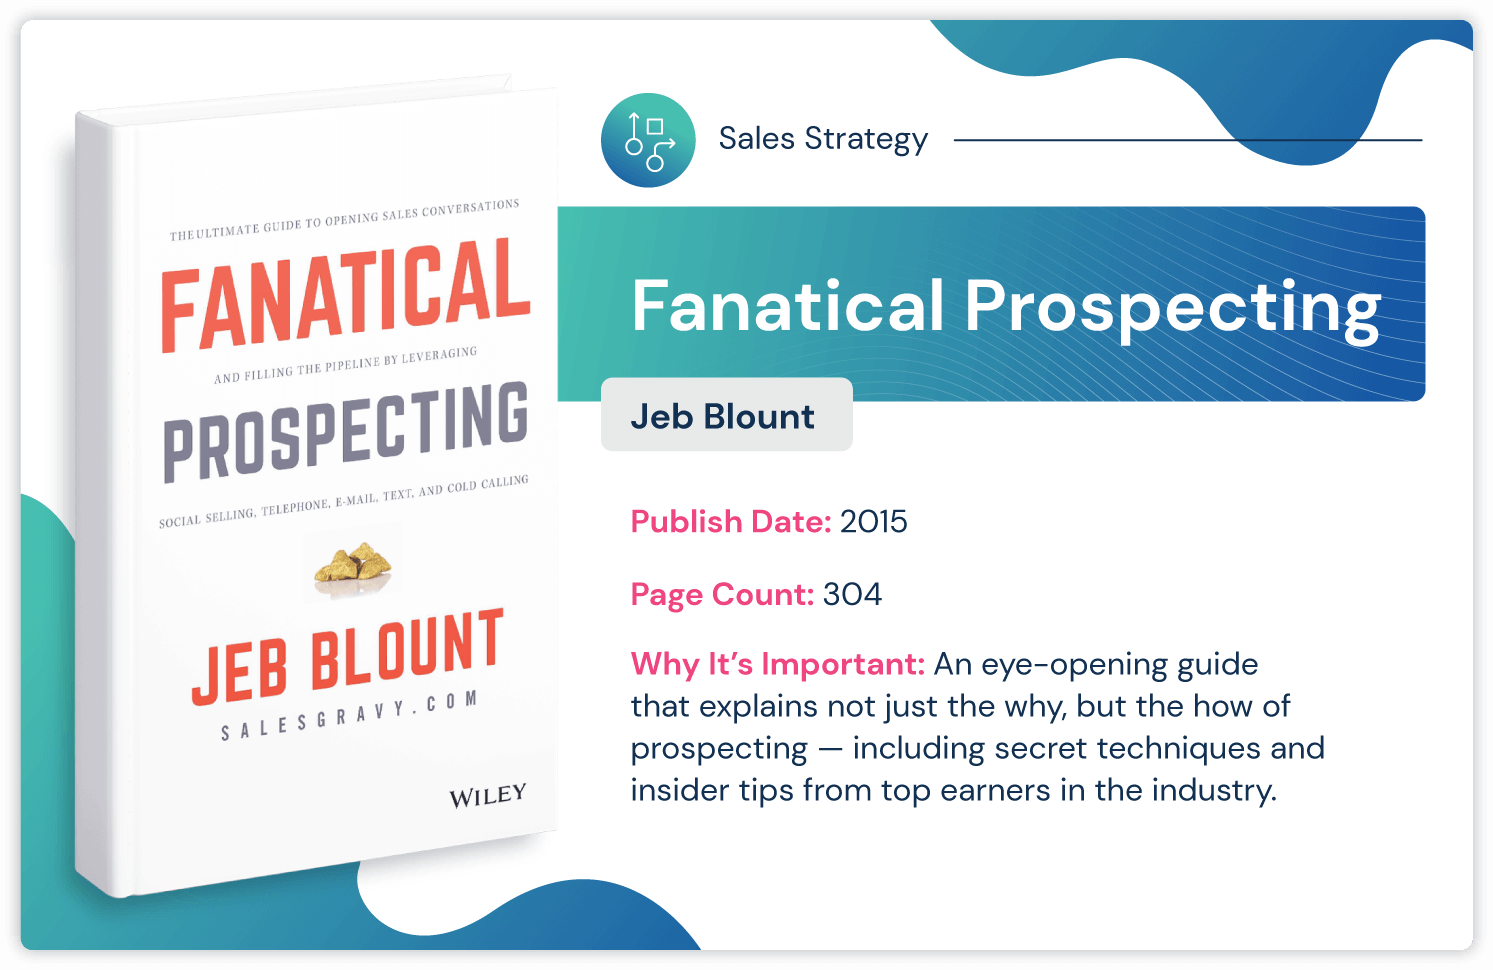 Книга по стратегии продаж «Fanatical Prospecting» Джеба Блаунта с советами по поиску инсайдеров, опубликованная в 2015 году и 304 страницы.